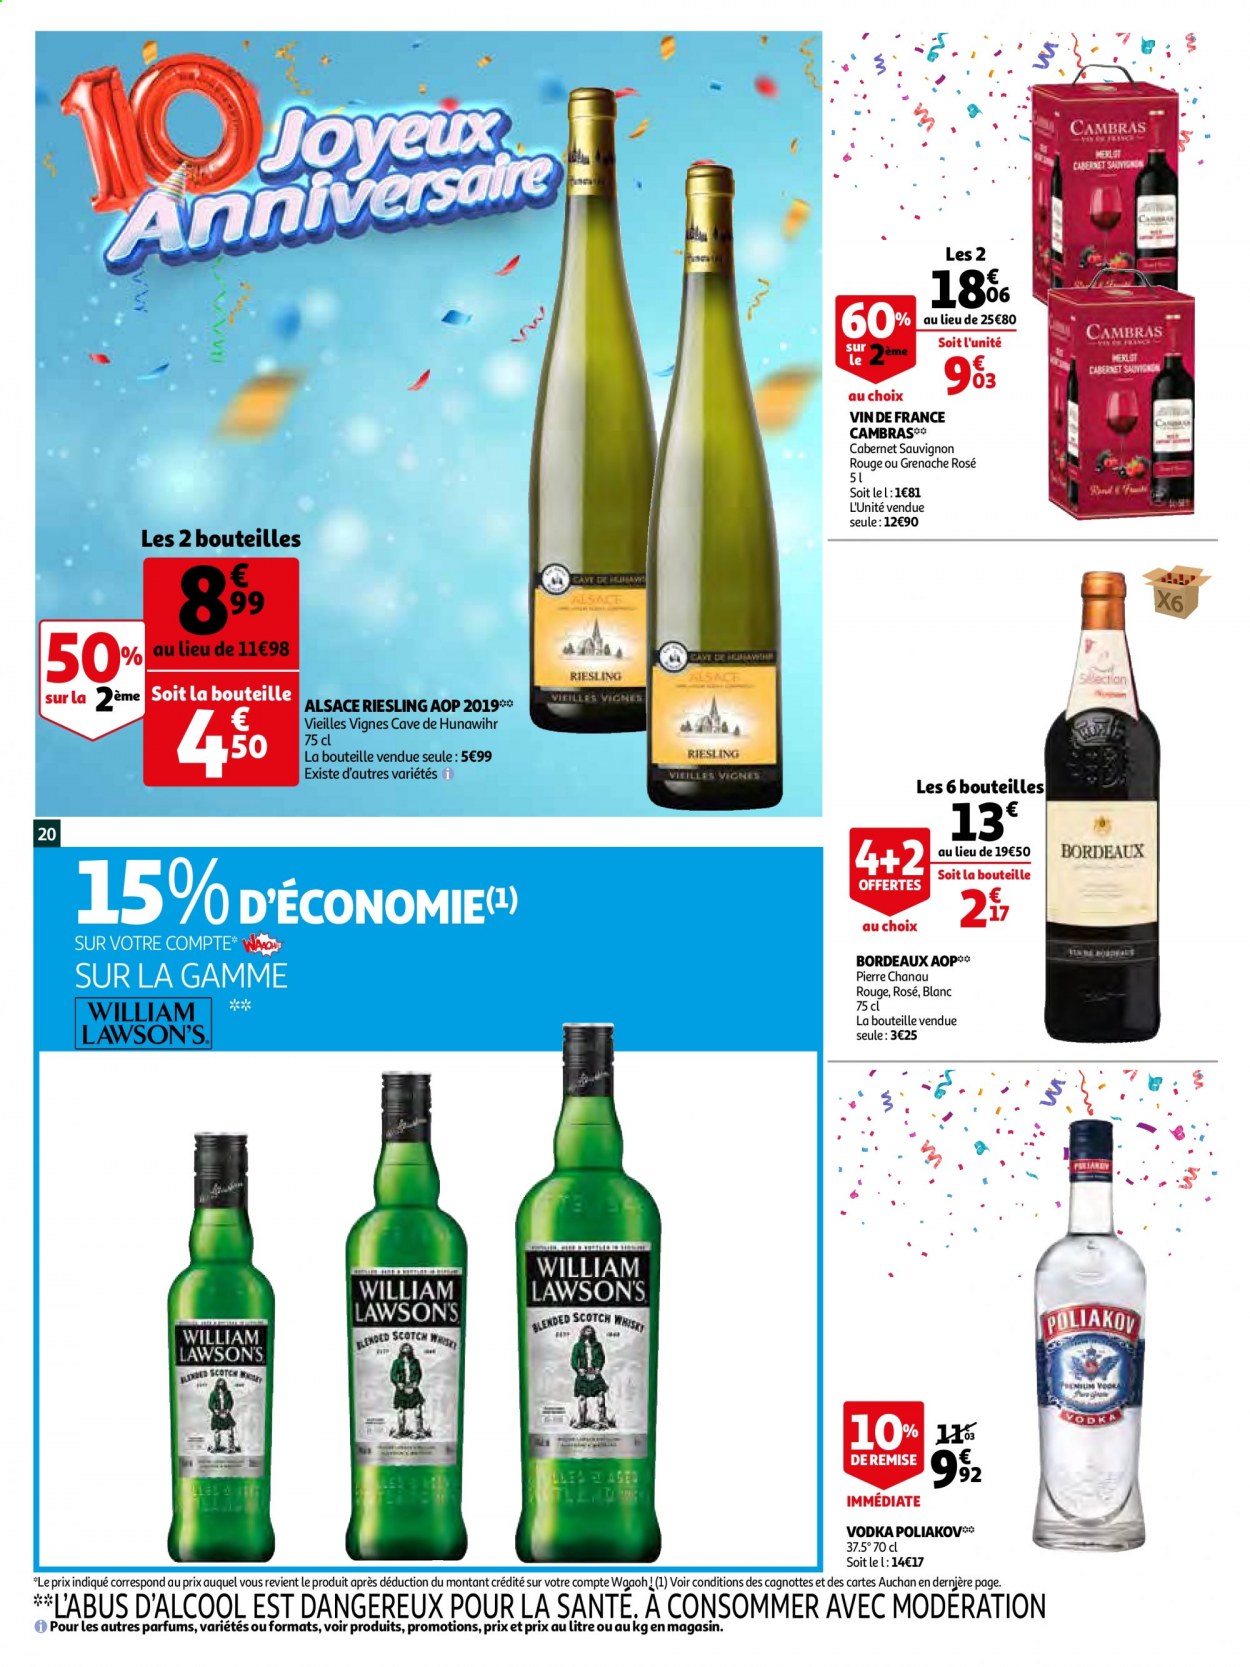 thumbnail - Catalogue Auchan - 06/04/2021 - 13/04/2021 - Produits soldés - Bordeaux, vin blanc, vin rouge, vin, Cabernet Sauvignon, Riesling, vodka, Poliakov. Page 20.